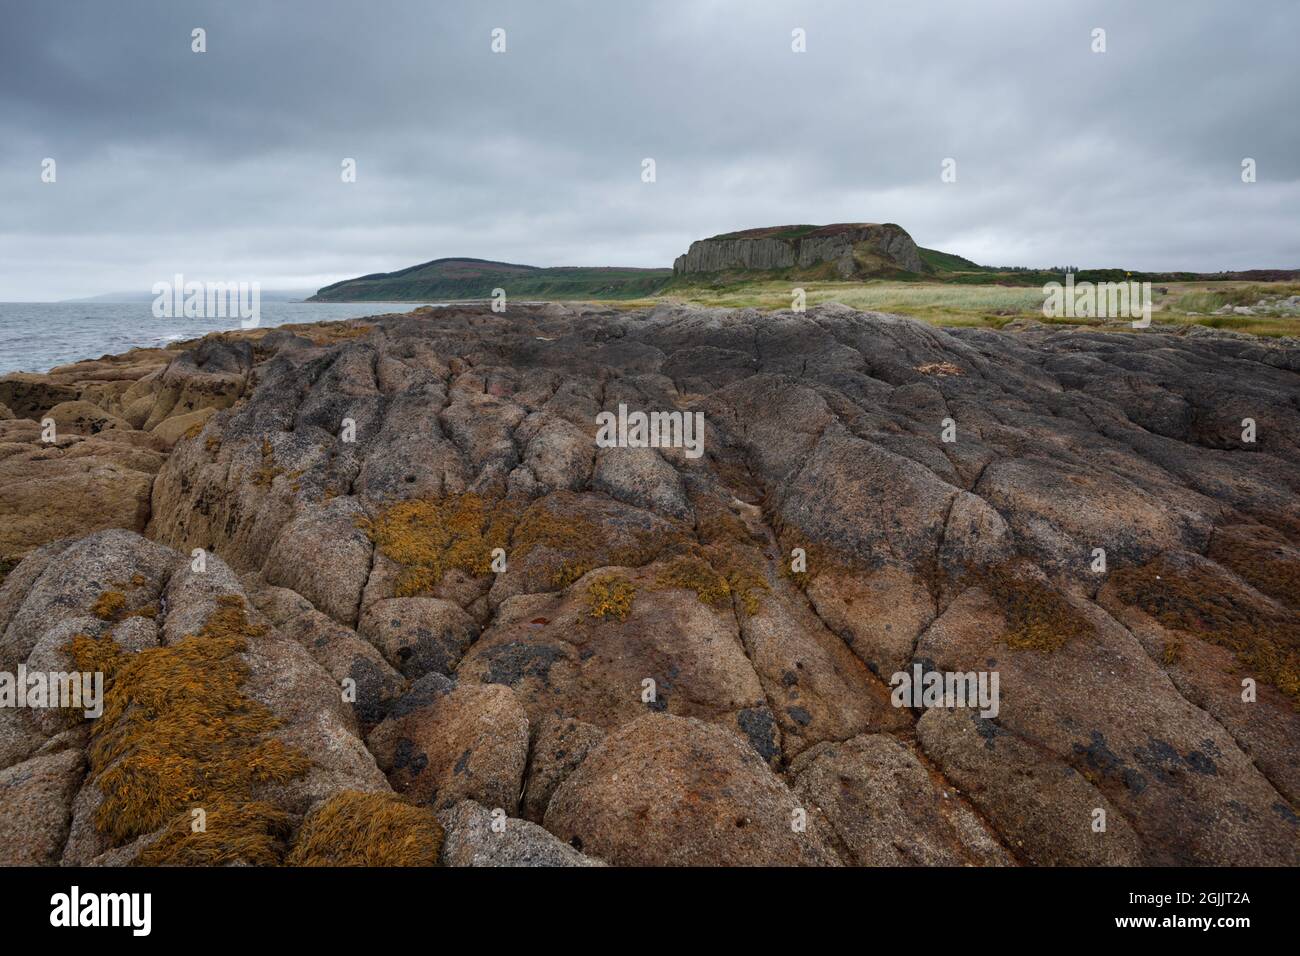 Drumadoon Point. Isle of Arran. Schottland, Großbritannien. Vulkanische (igneous) Geologie am Vorland und in den fernen Schwellen. Stockfoto